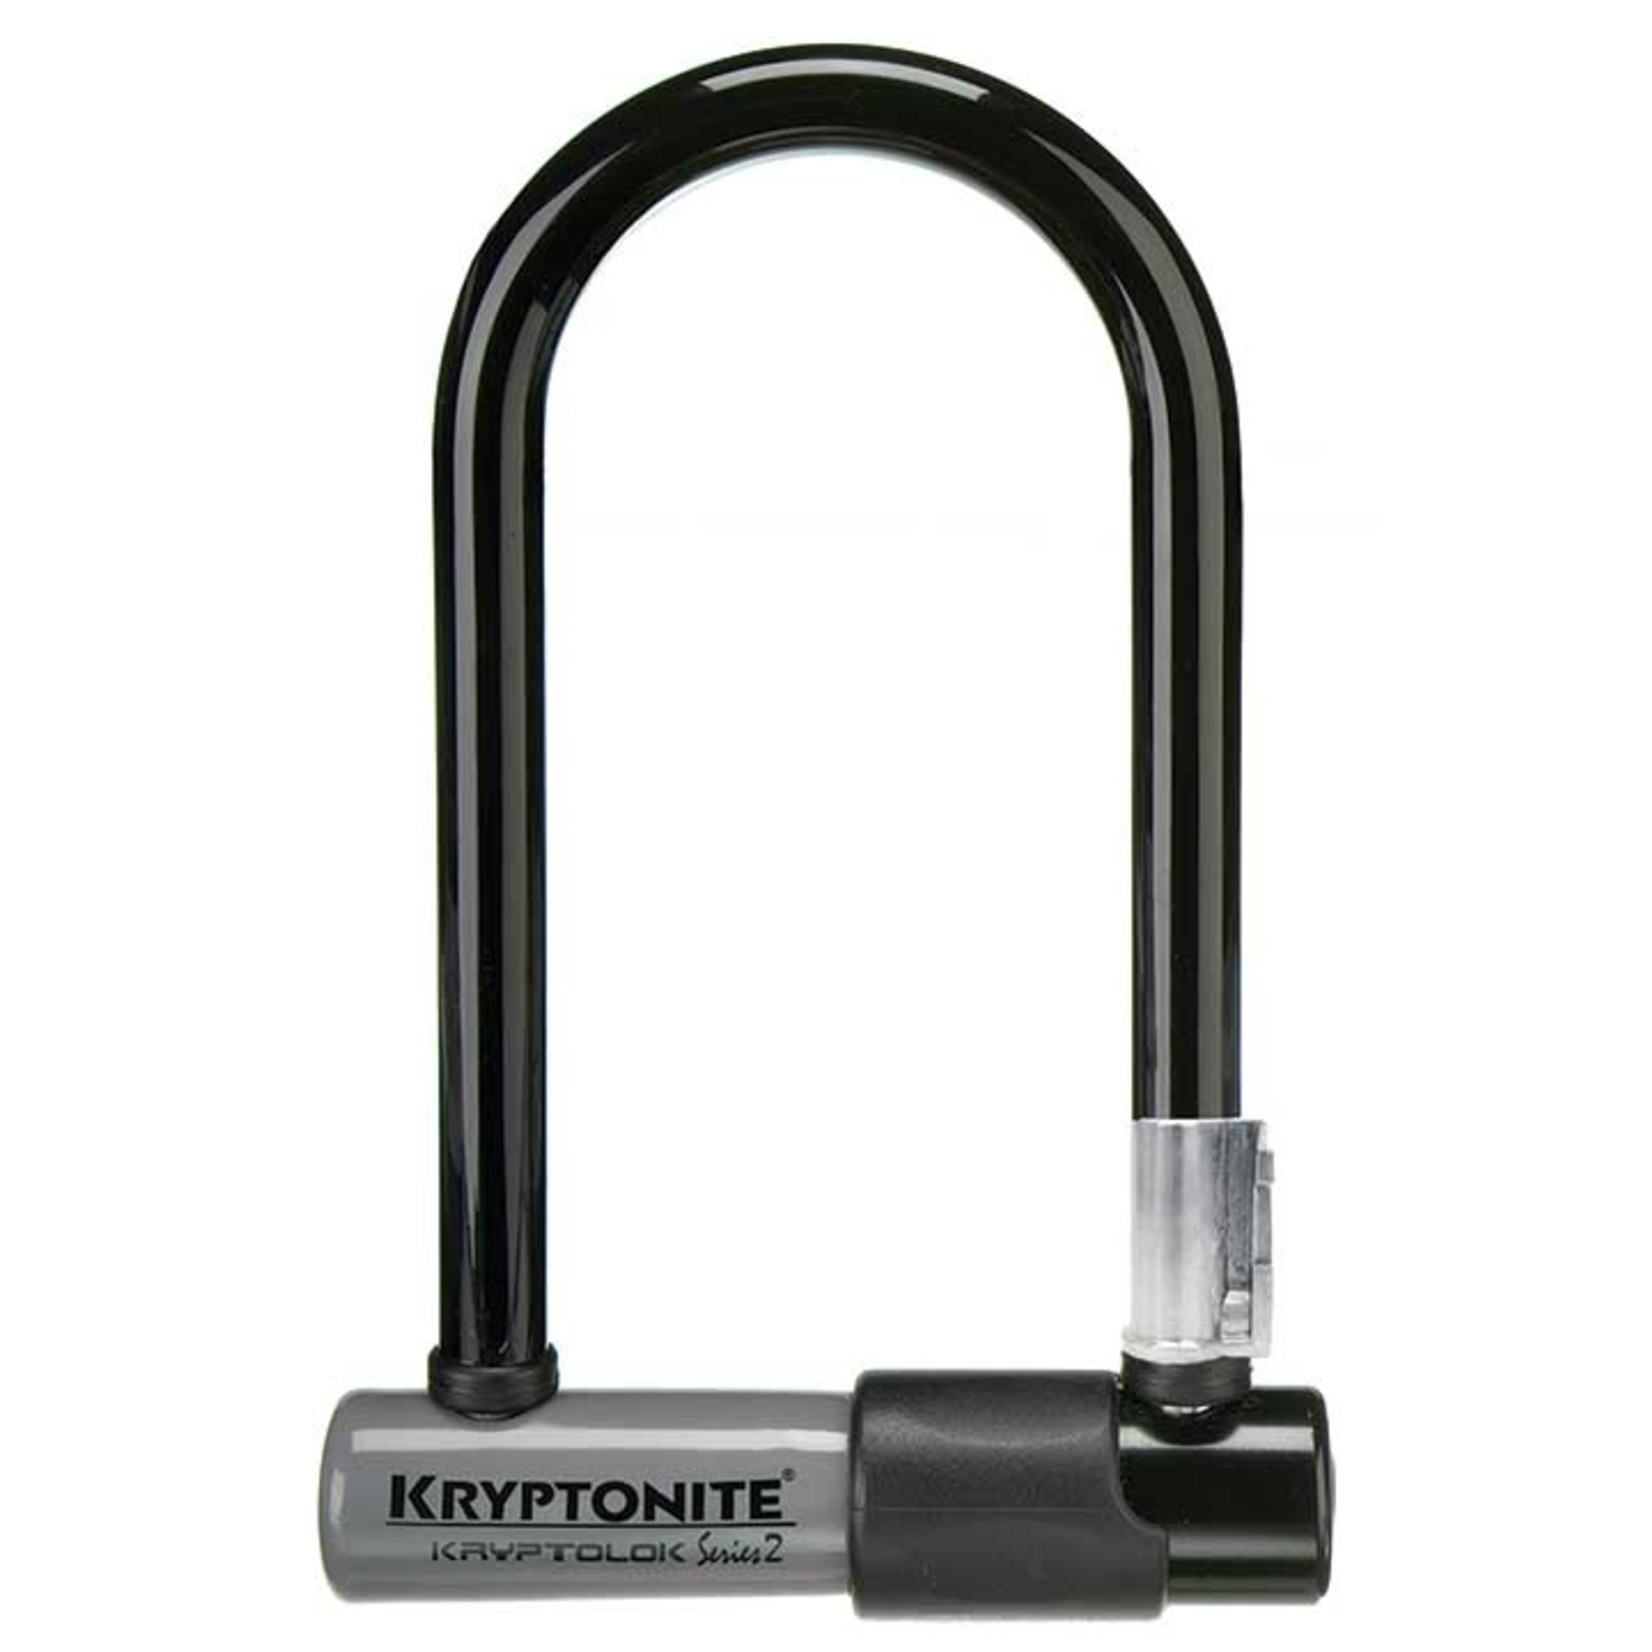 Kryptonite Lock Krypto Series 2 Mini-7 U-Lock - 3.25 x 7" Keyed White Includes bracket